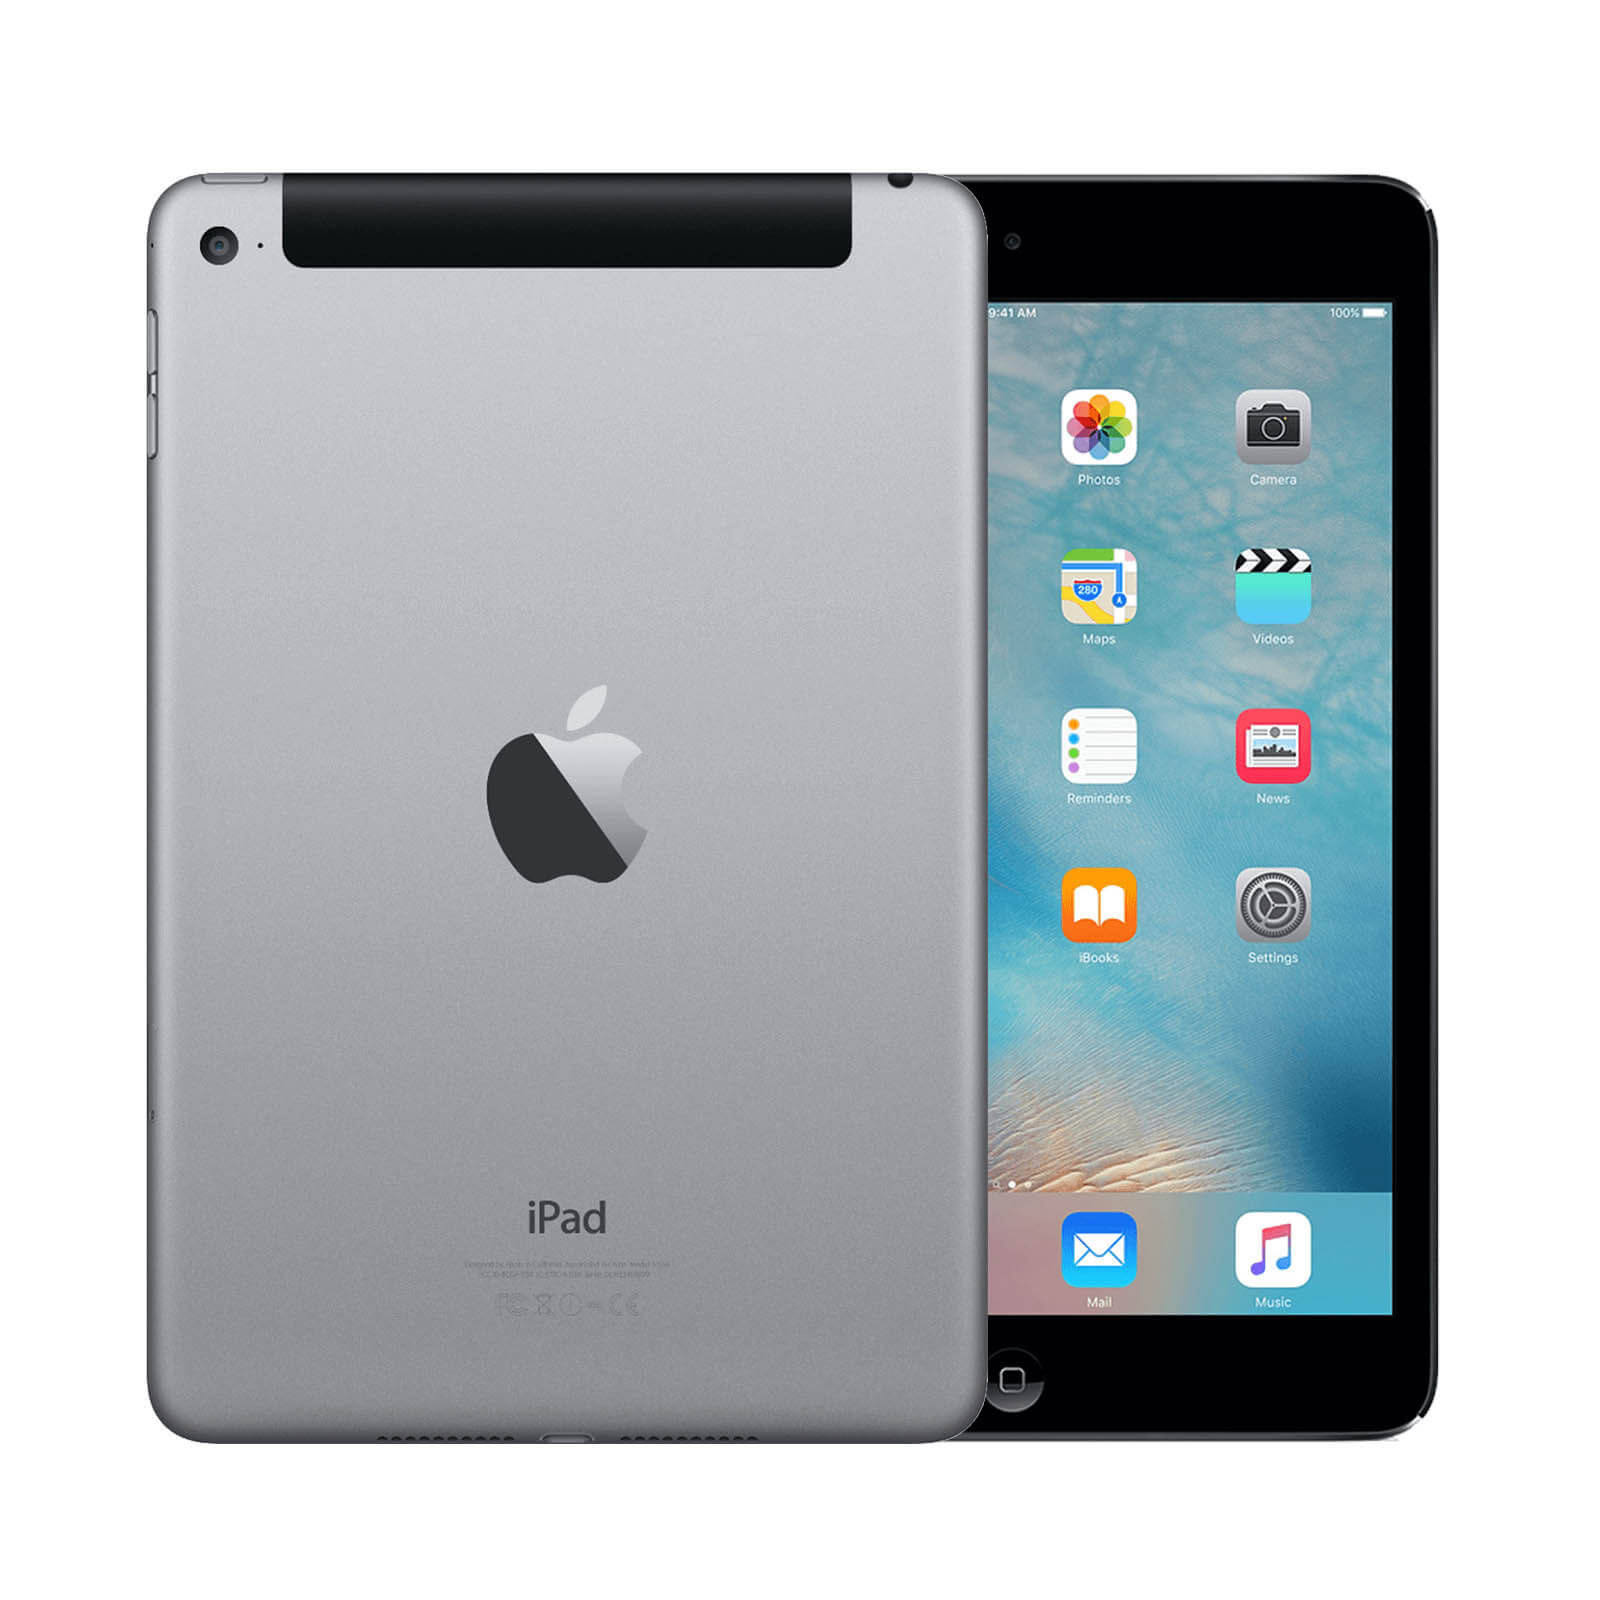 Apple iPad Mini 4 32GB Space Grey WiFi & Cellular - Good 32GB Space Grey Good